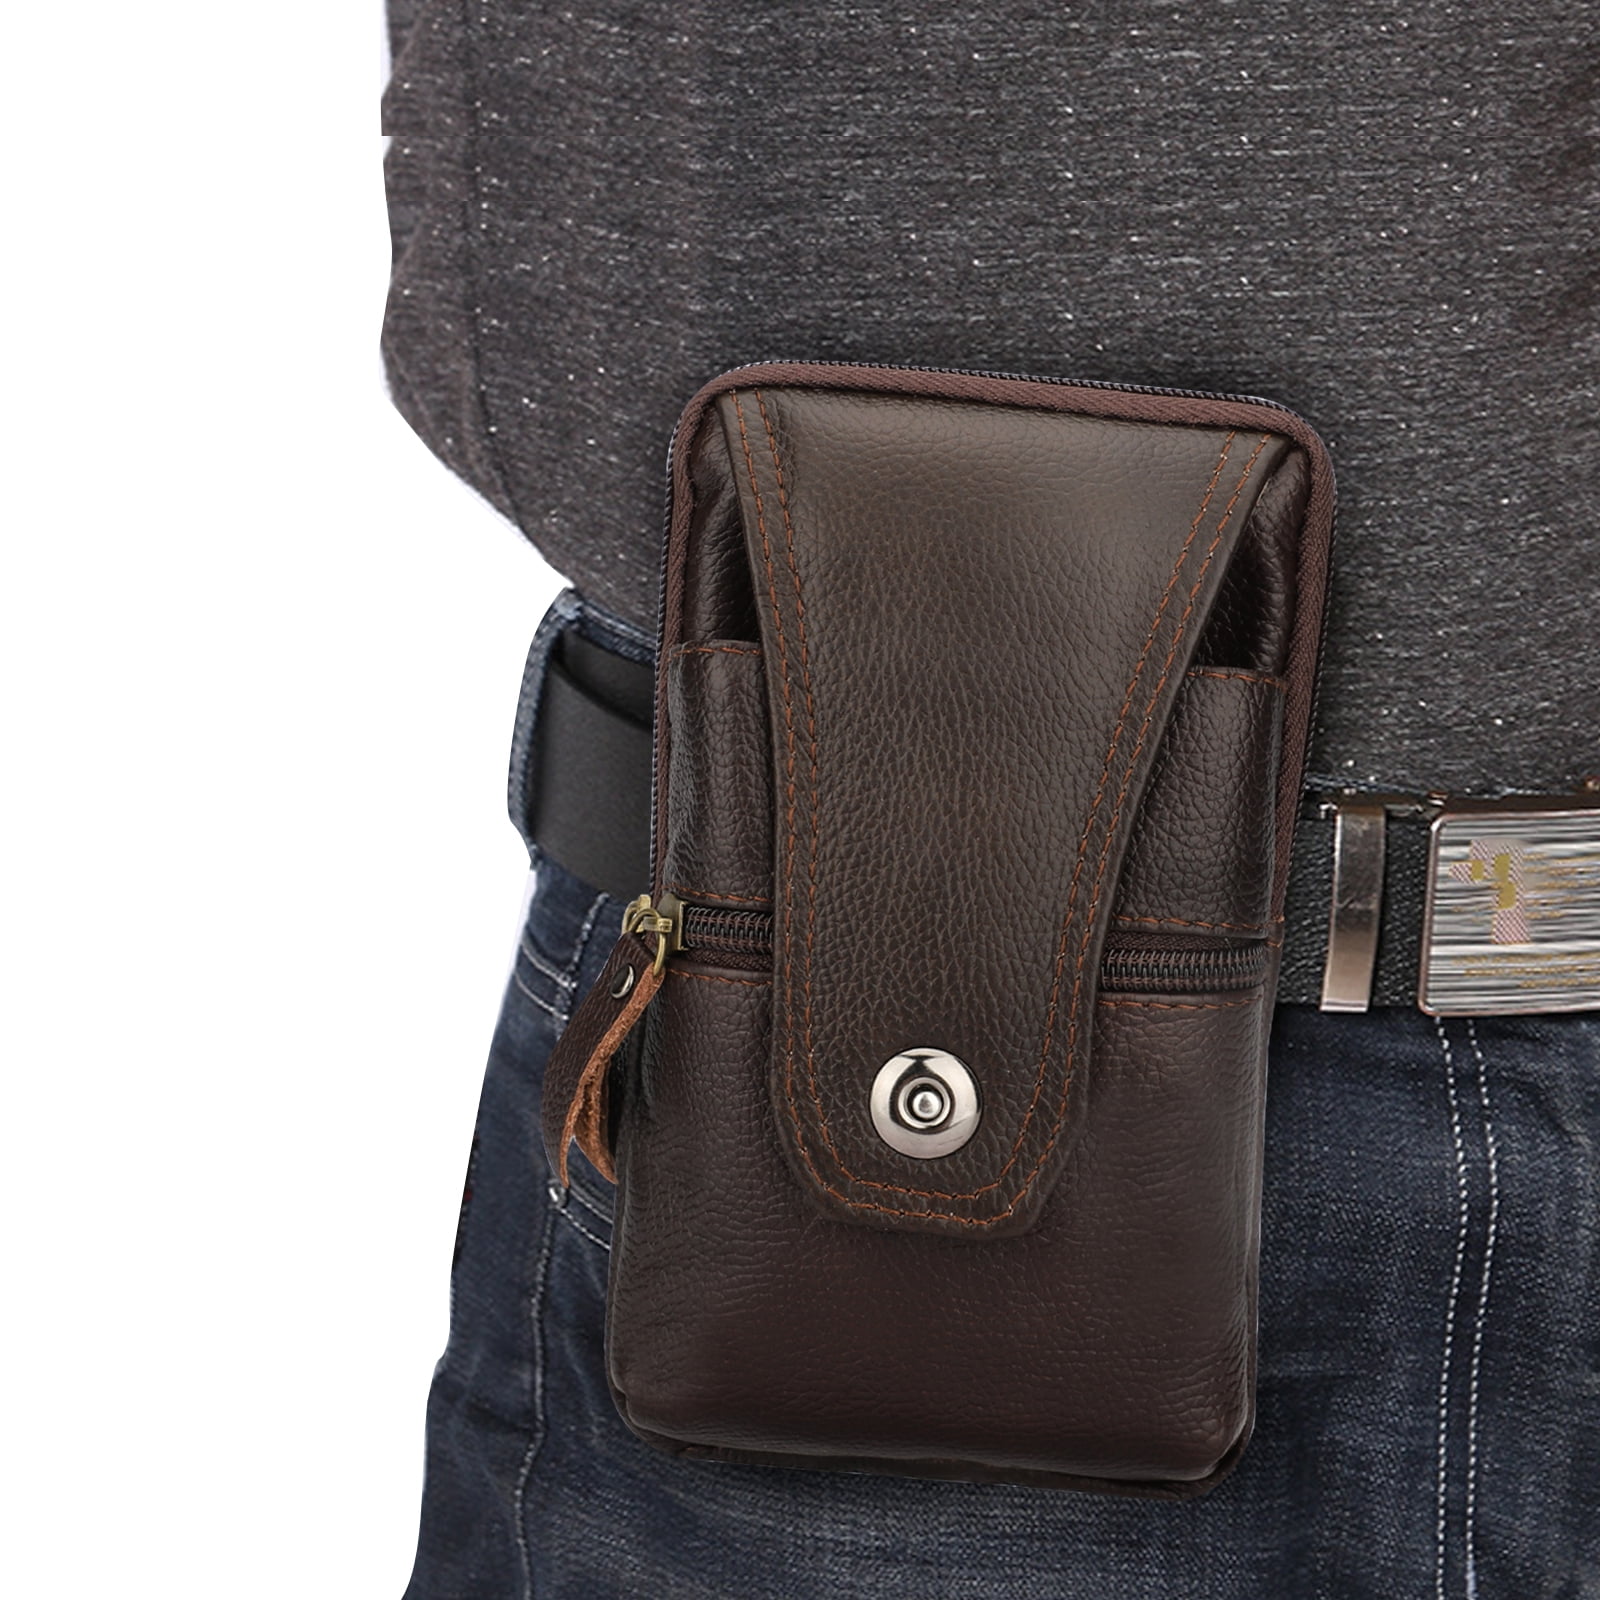 CHmiss Mobile Phone Bag Belt, Versatile Belt Bag, Belt Phone